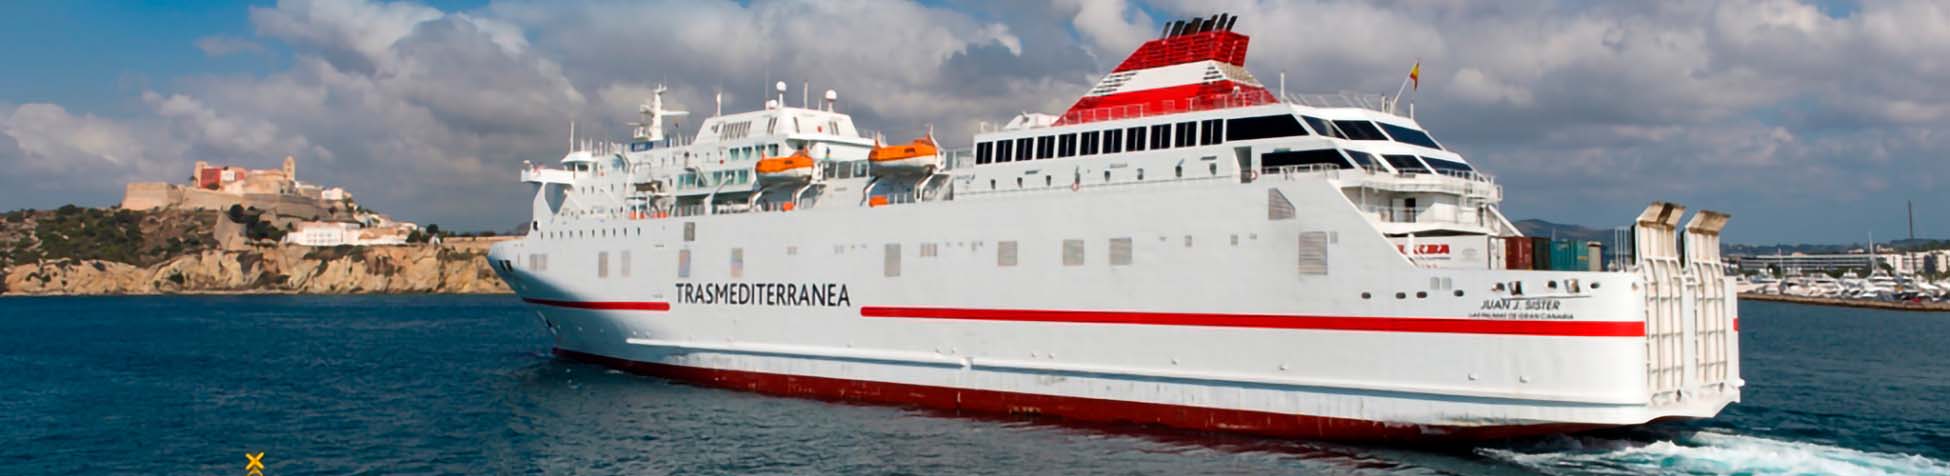 Imatge recurs del port de destinació Melilla per a la ruta en ferry Almeria - Melilla